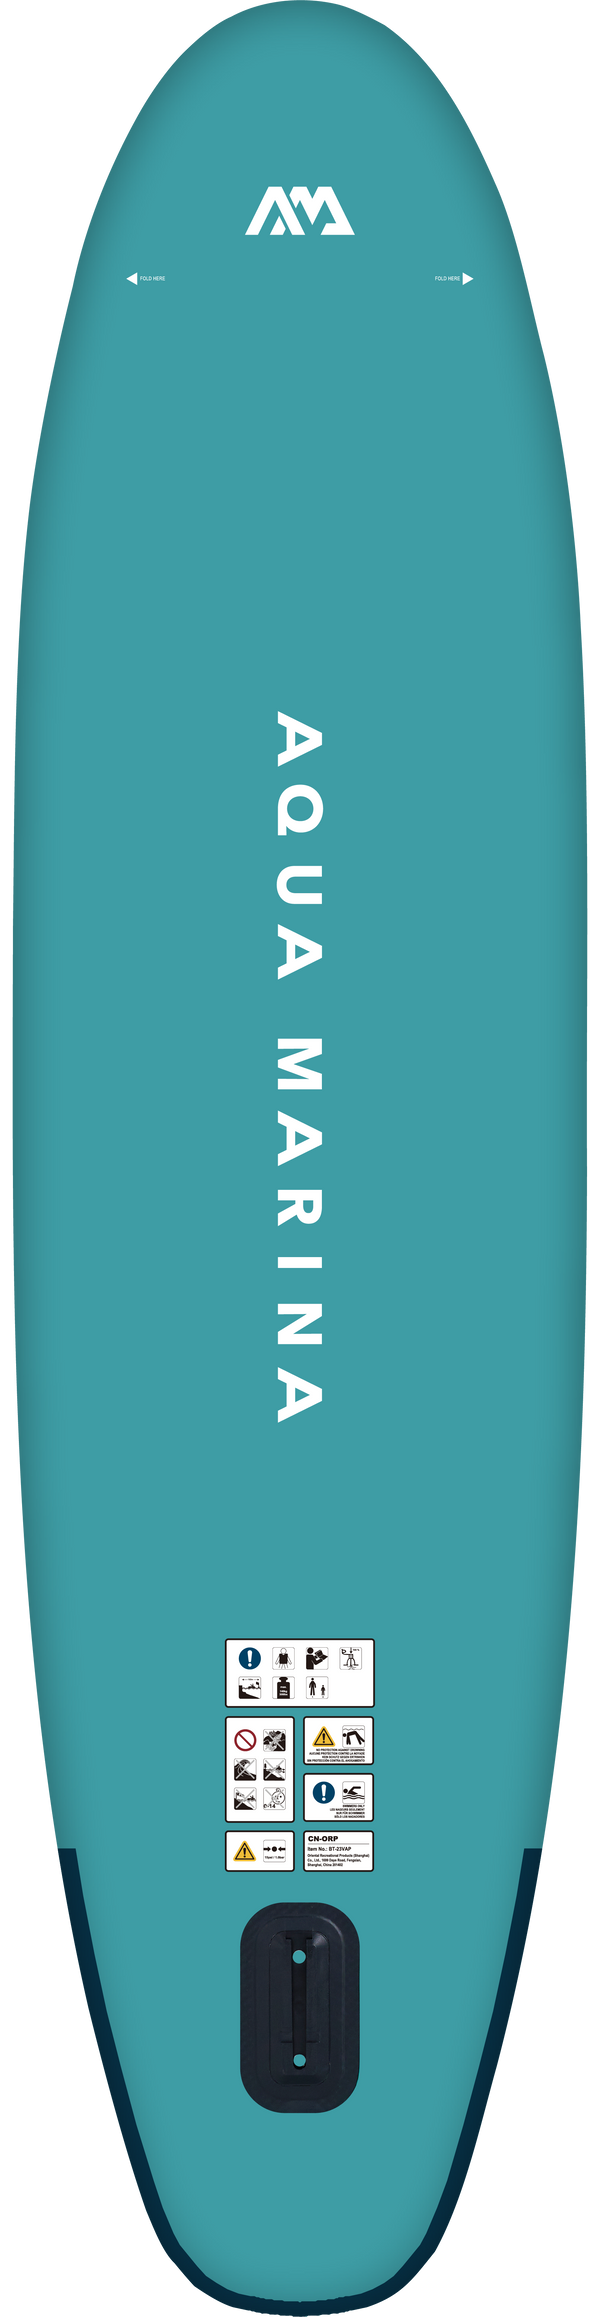 Vapor - Aqua Marina